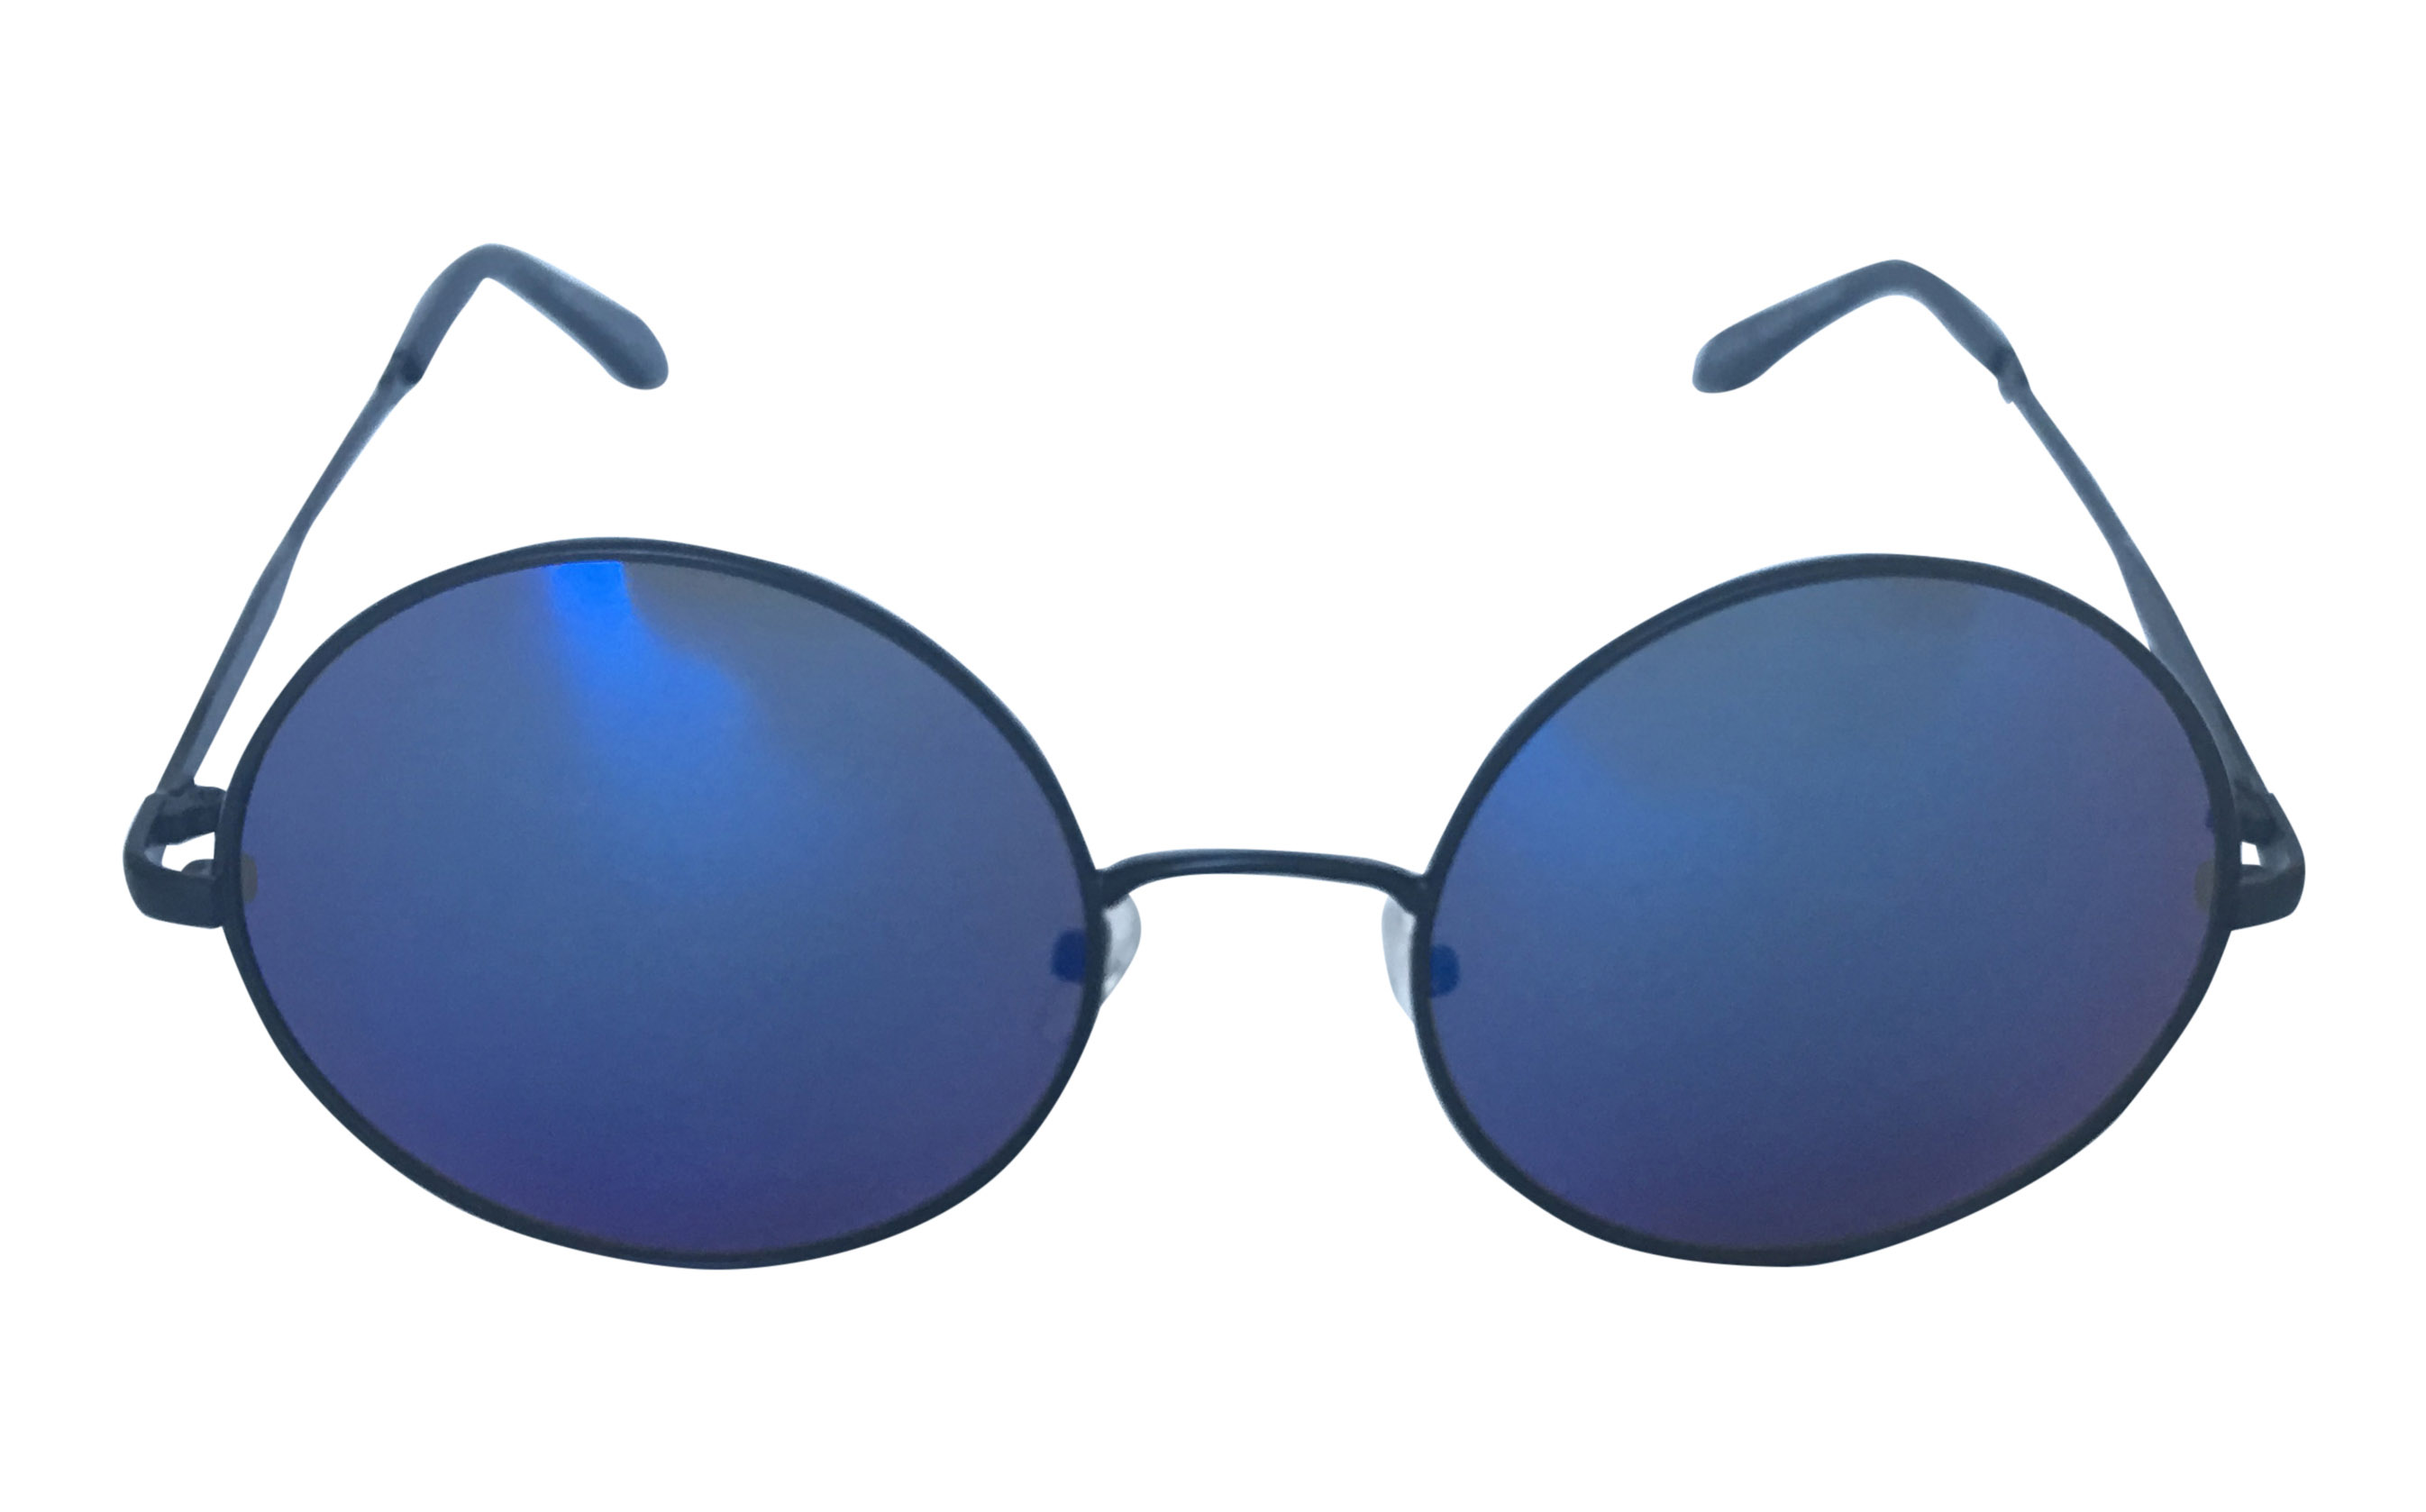 Metal solbrille i oversize design. Sort metal stel med blålige spejlglas. | oversize_store_solbriller